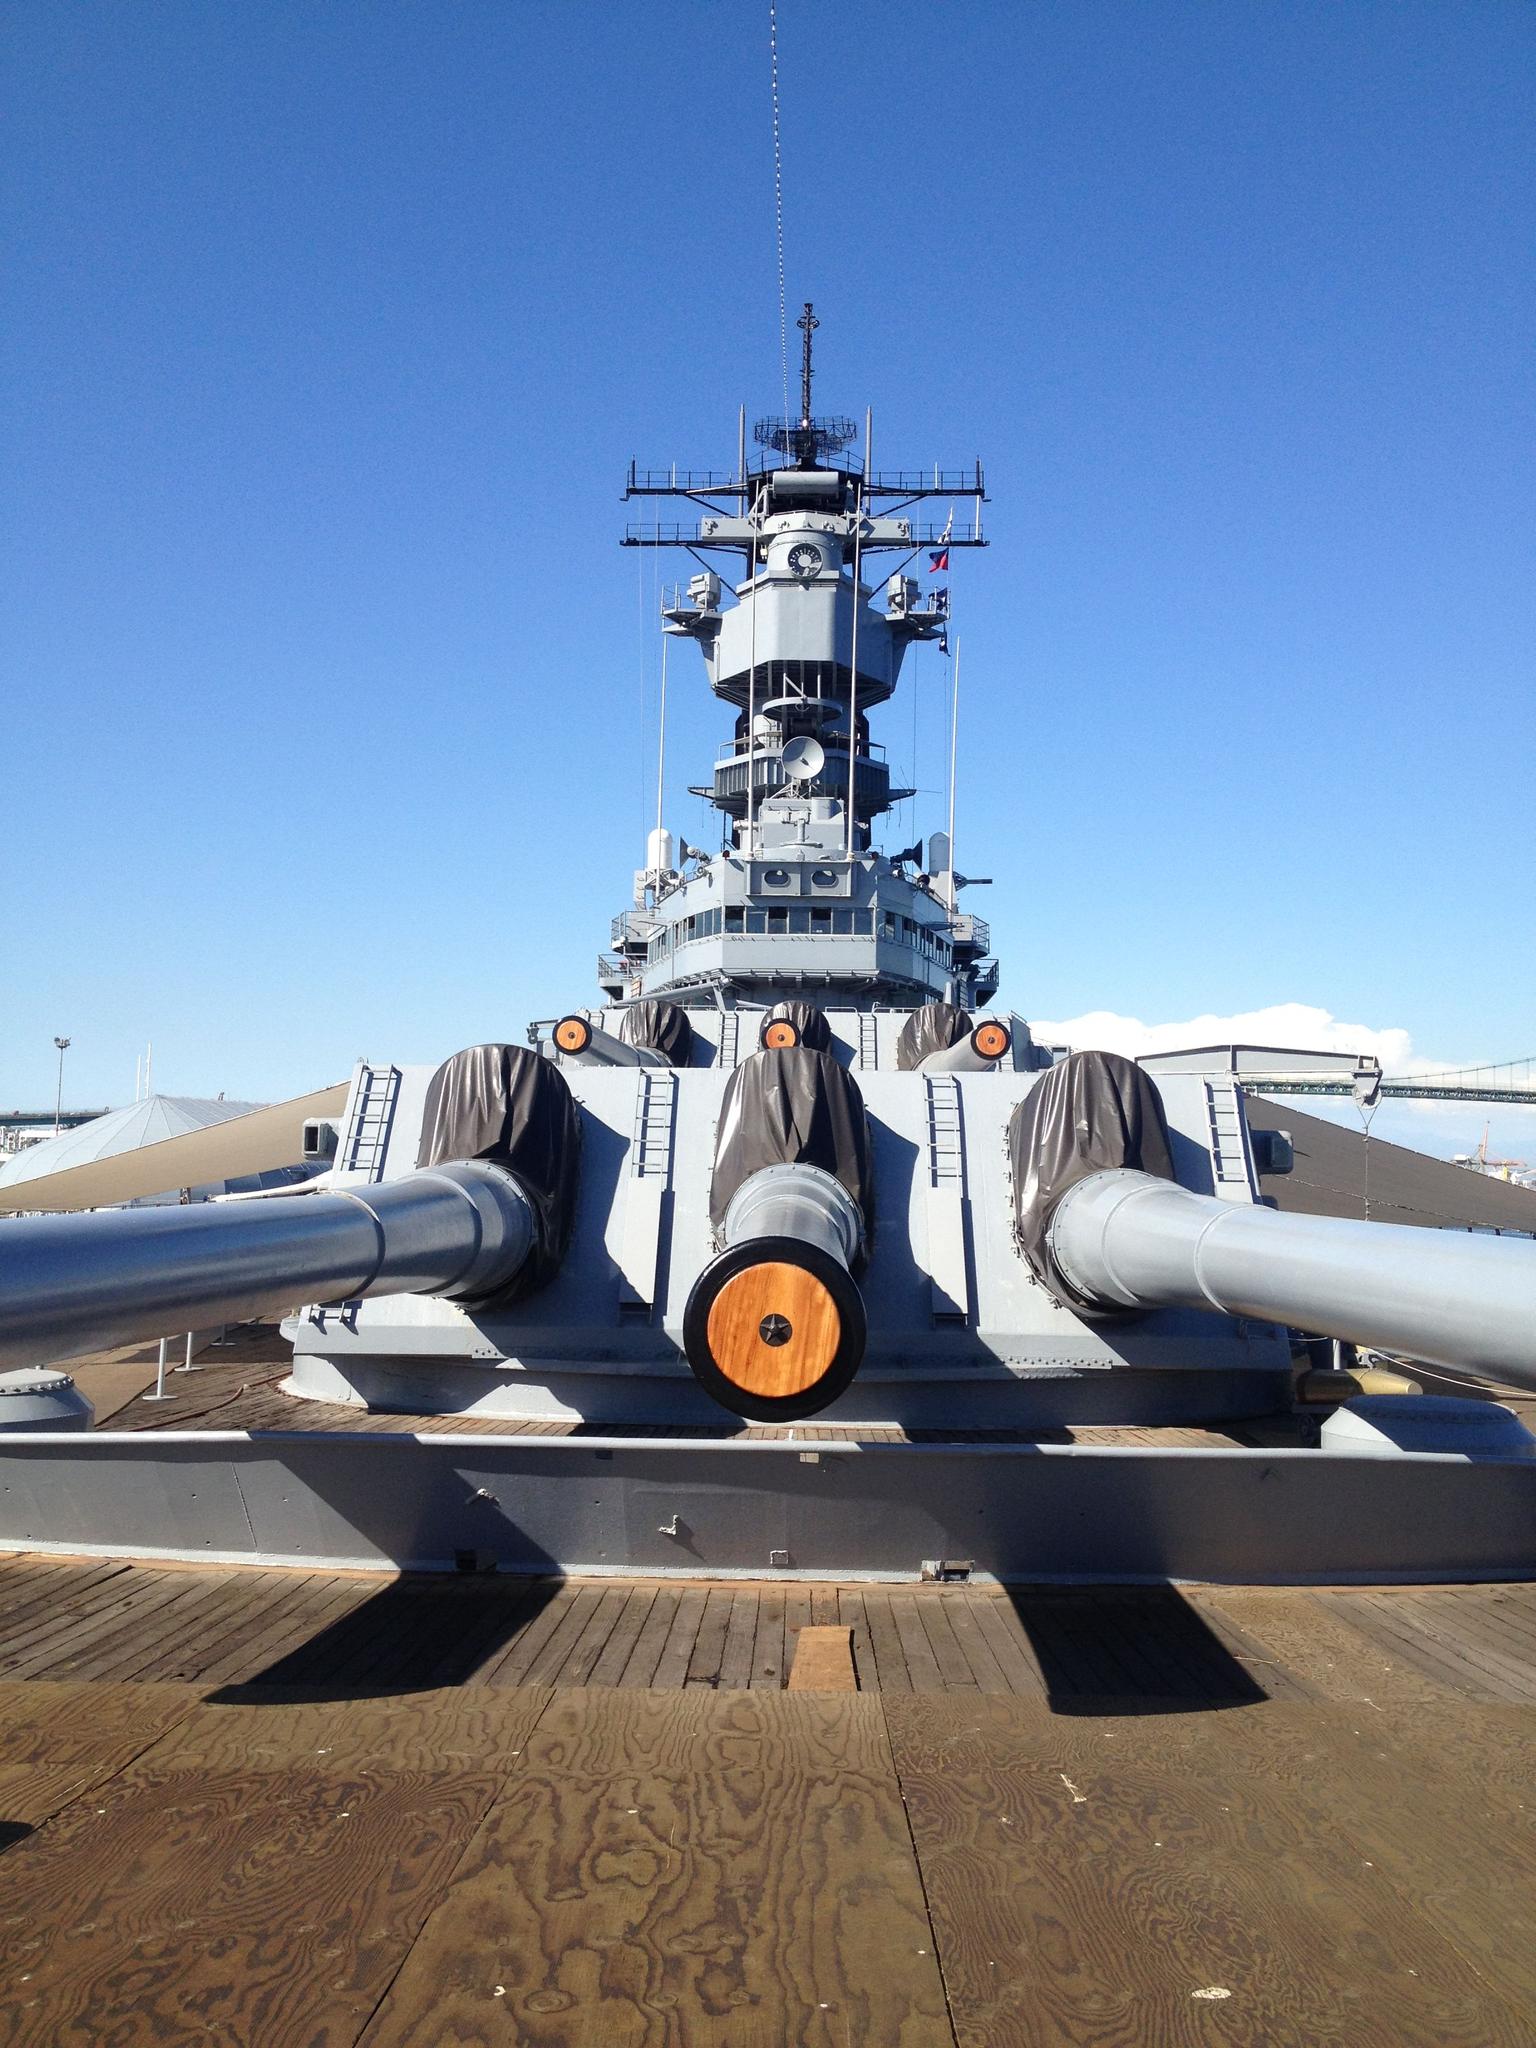 The USS Iowa